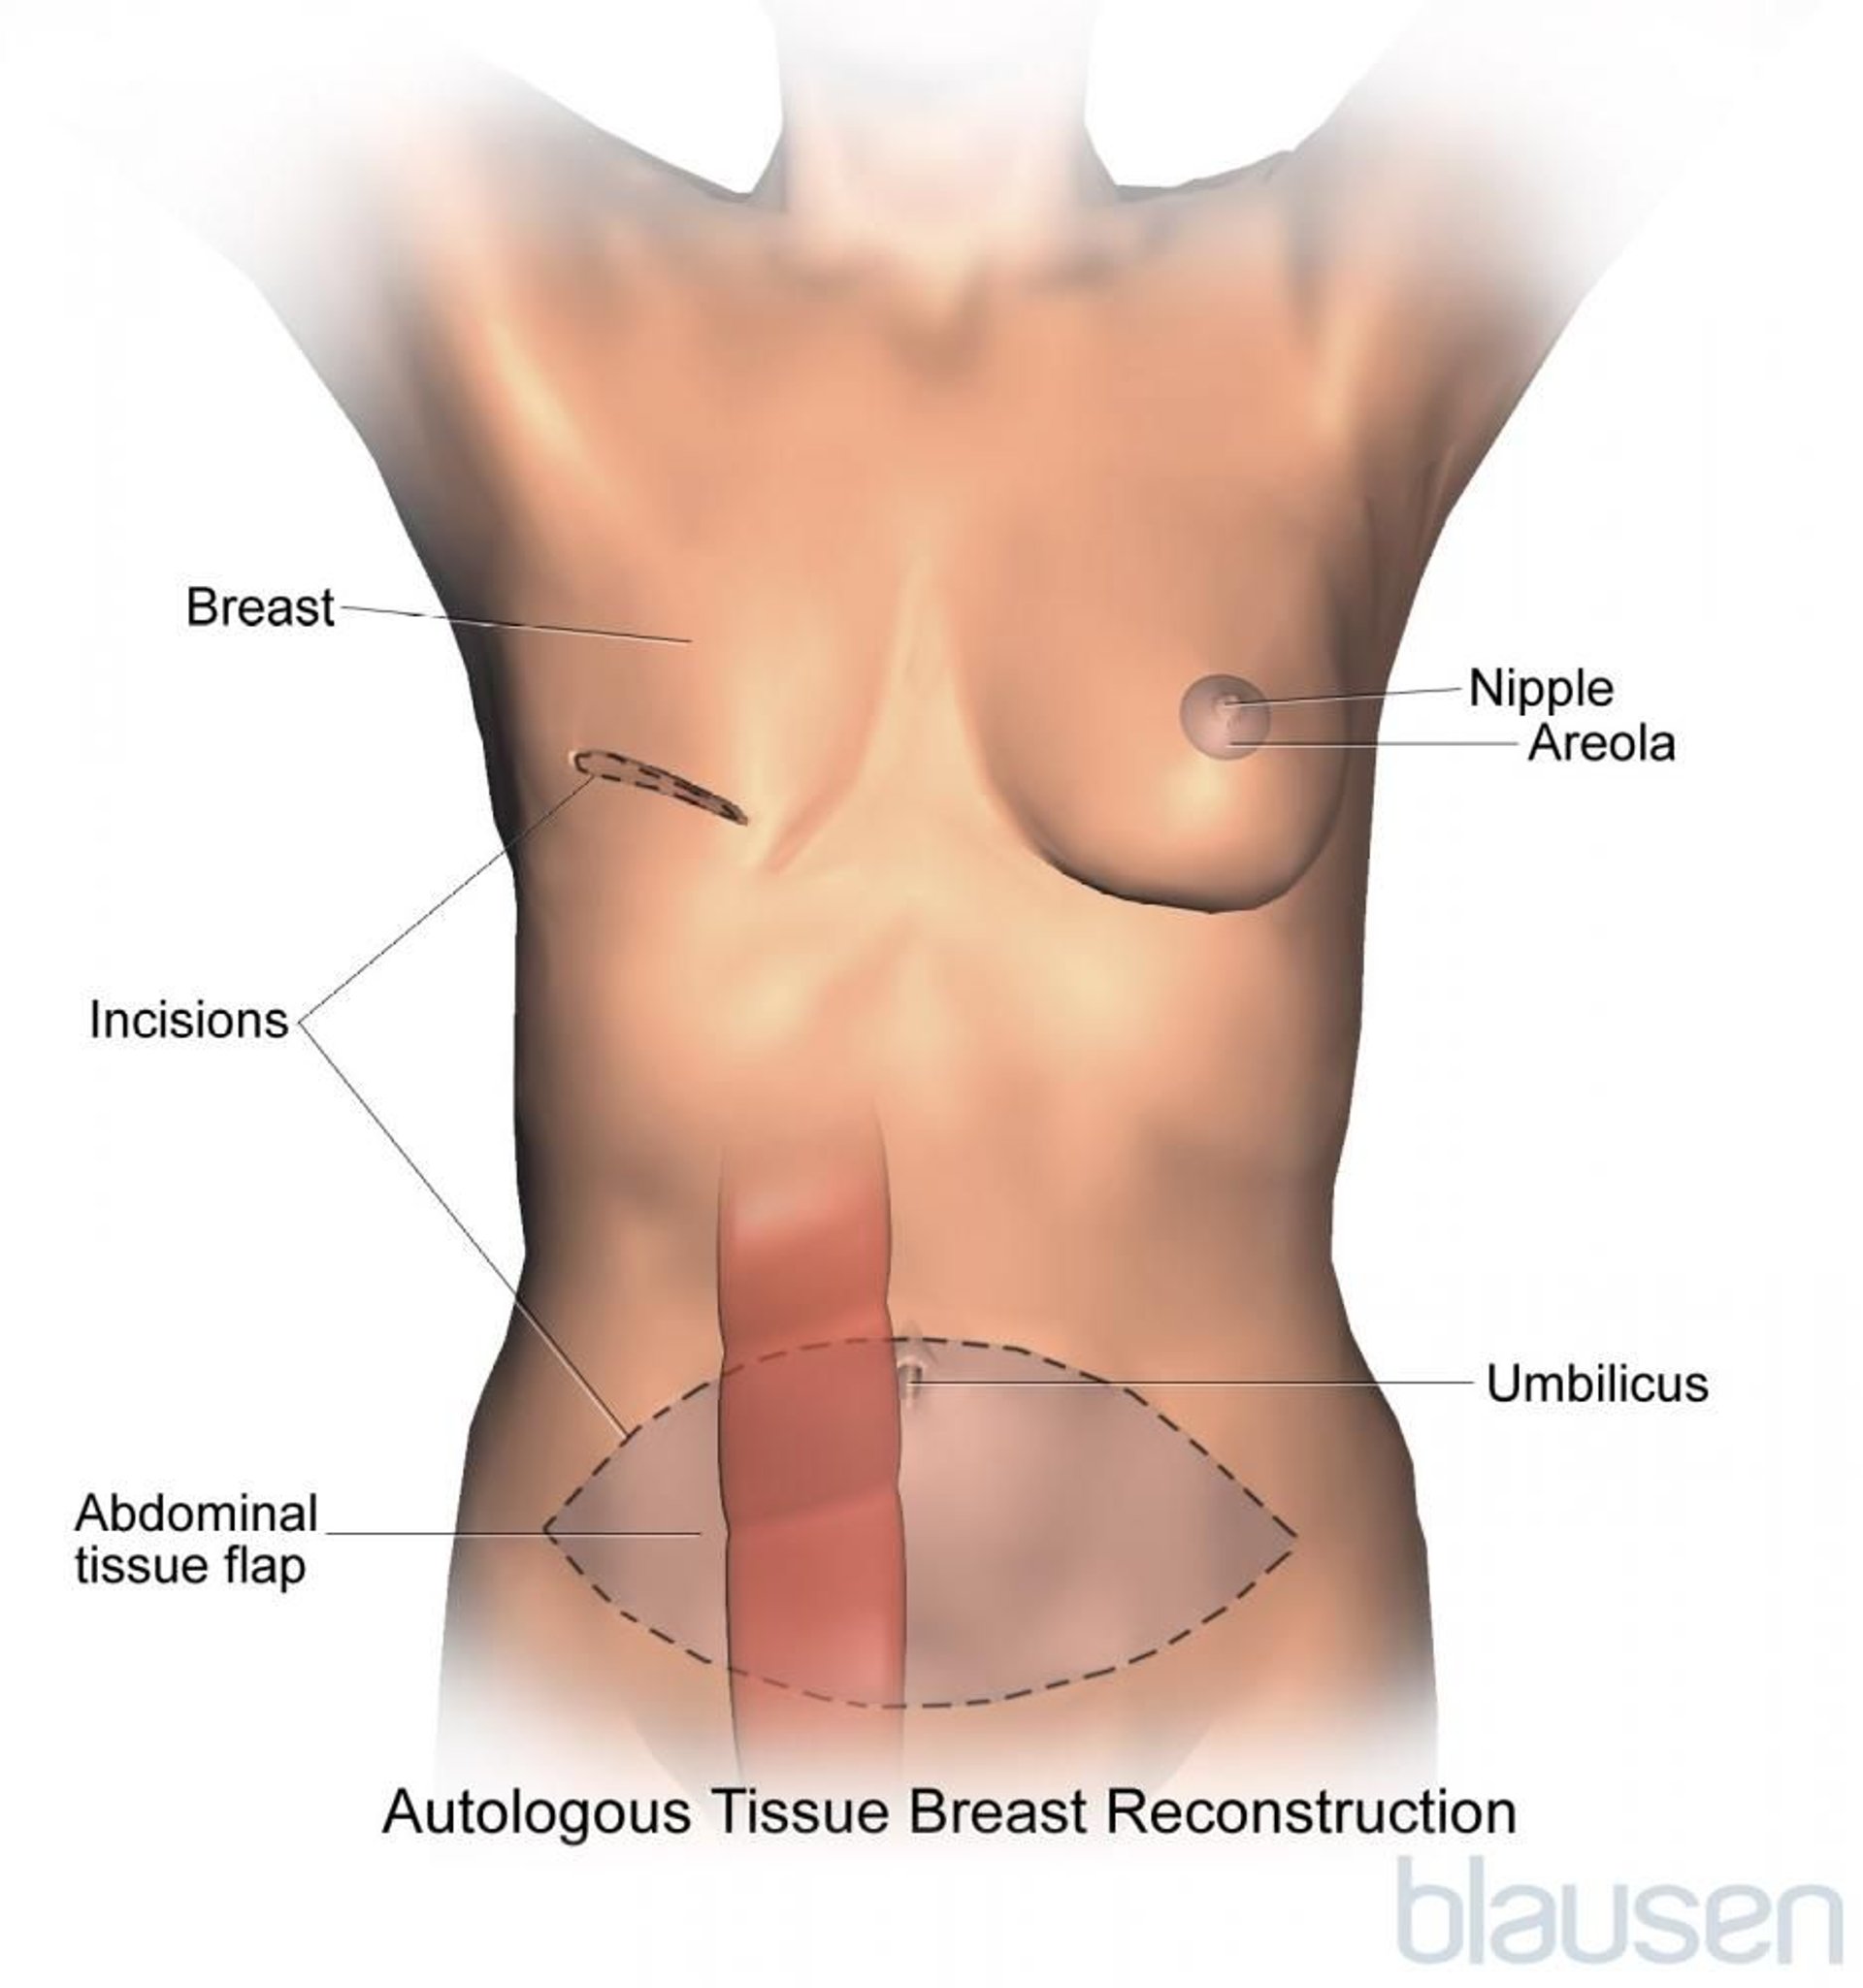 Procedimento de reconstrução da mama com retalho do músculo reto abdominal transverso (TRAM)